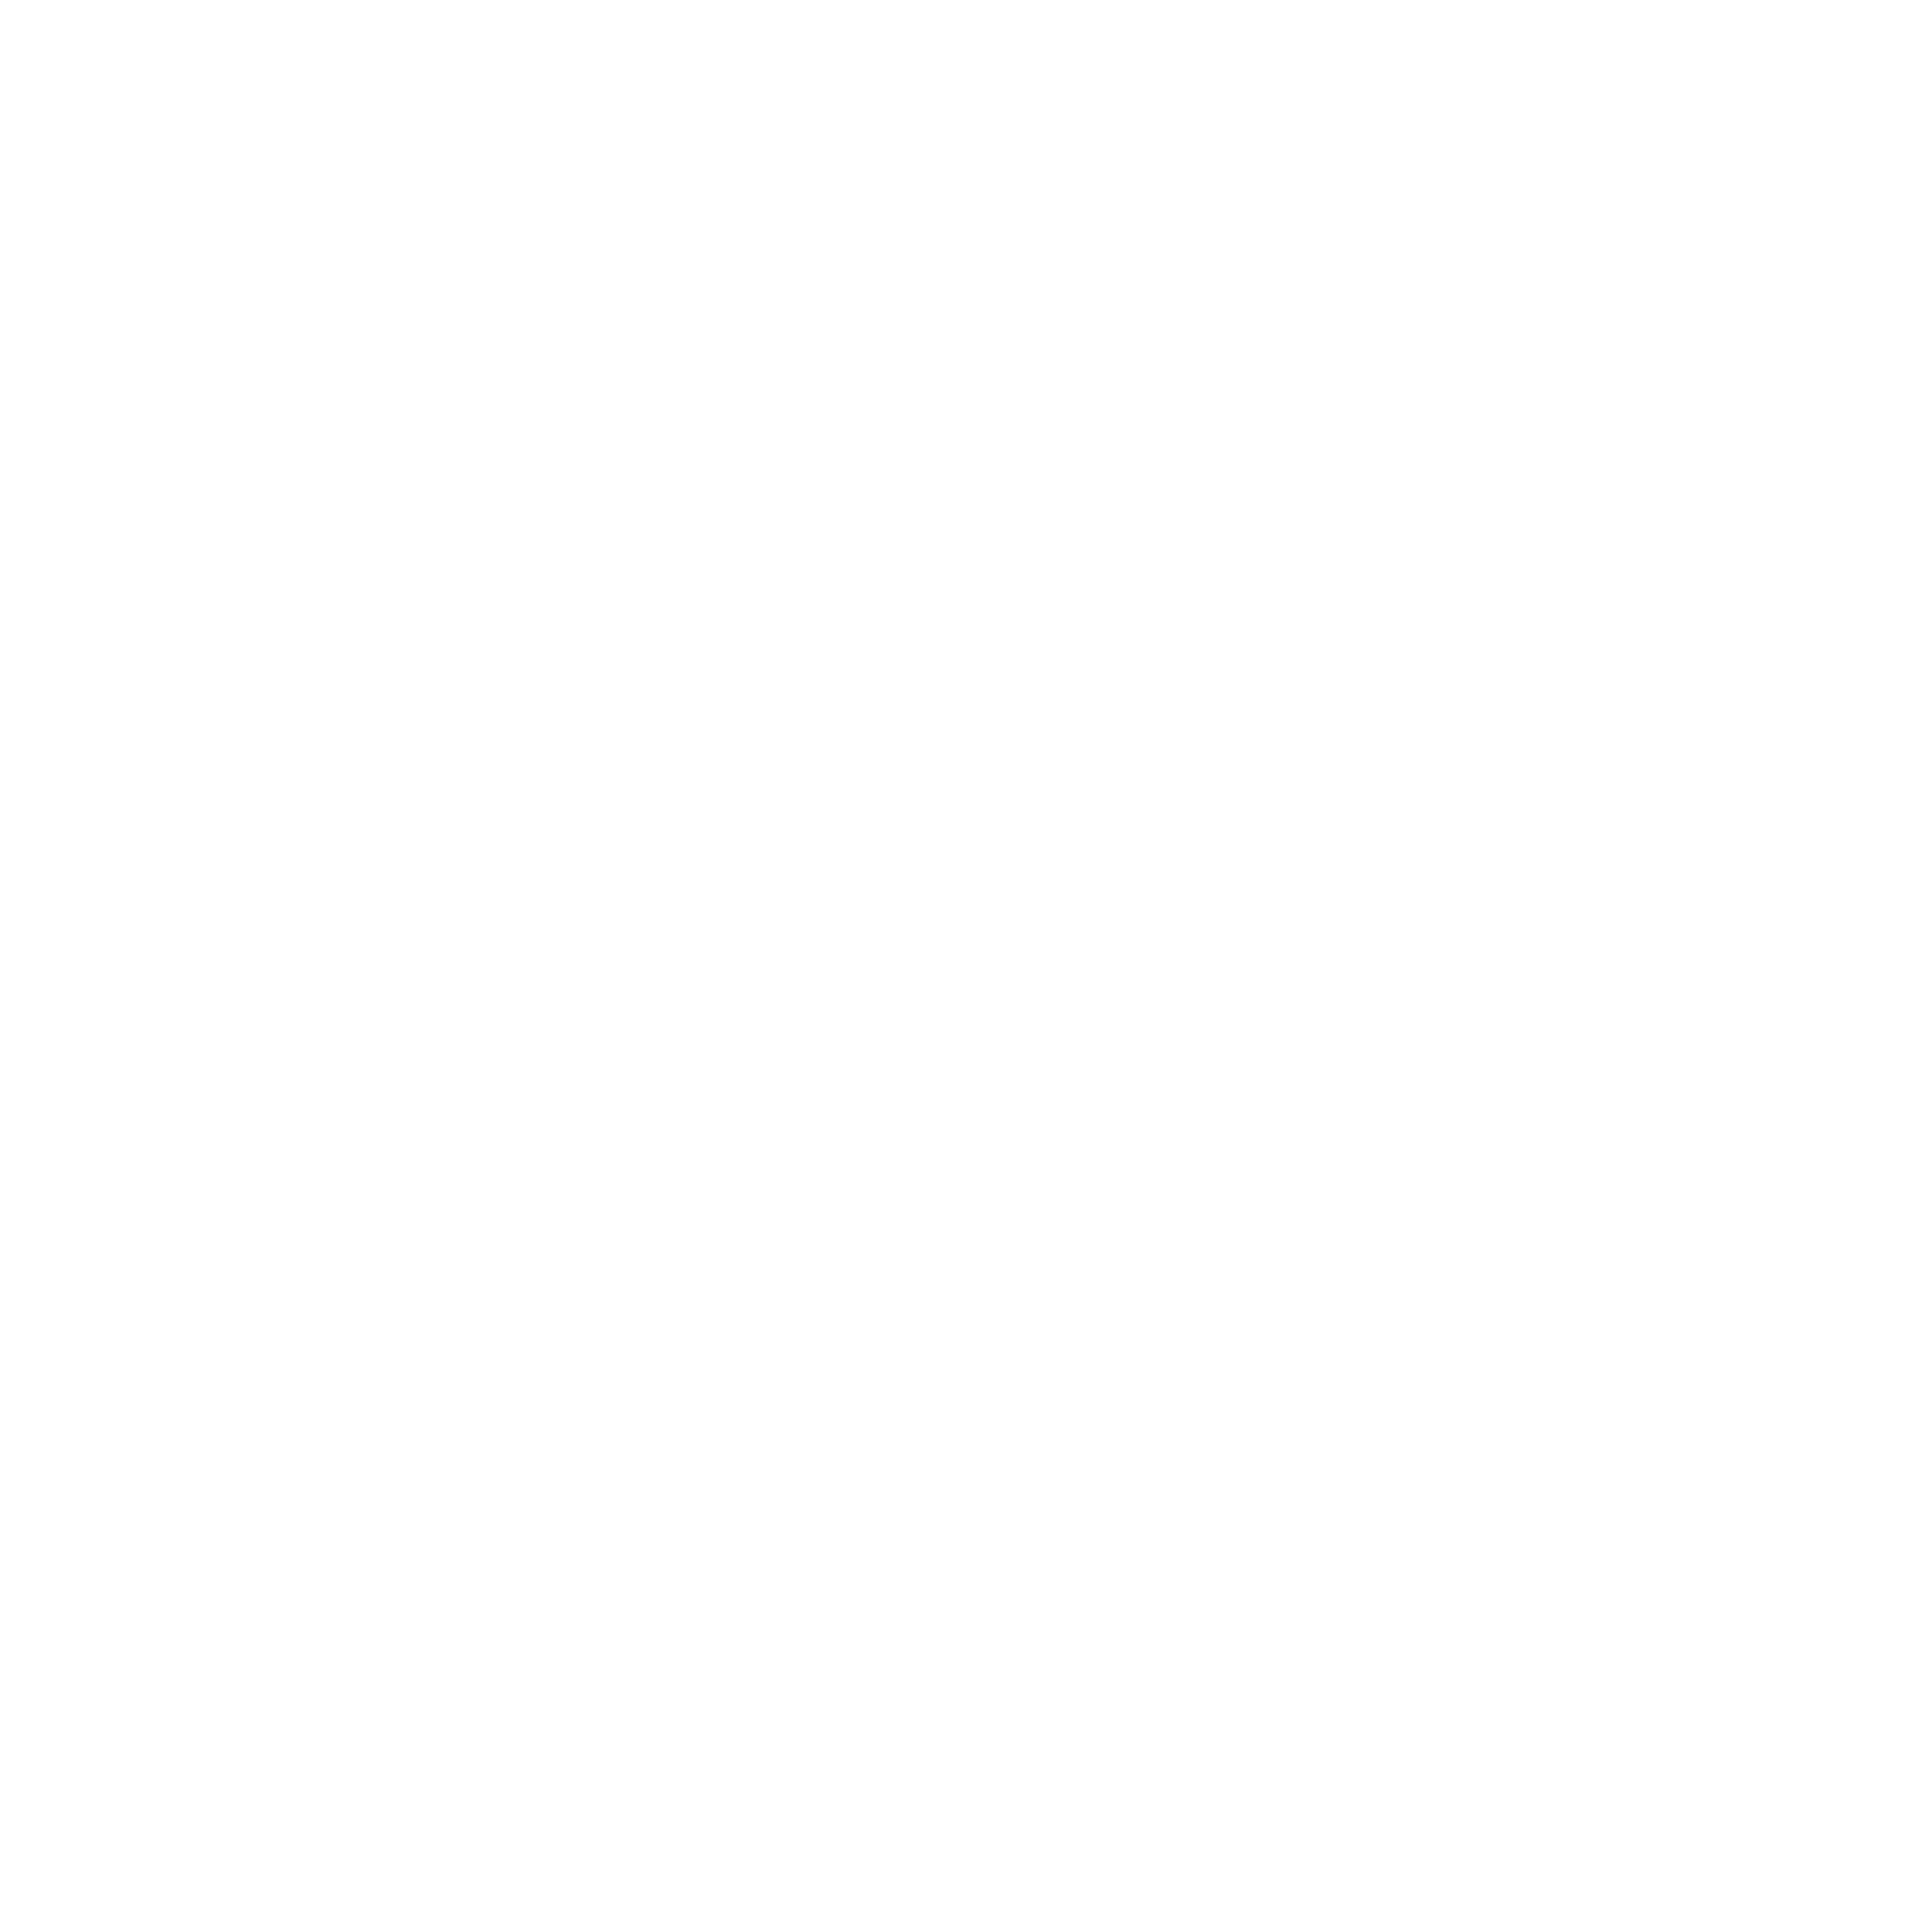  facebook-app-symbol-white